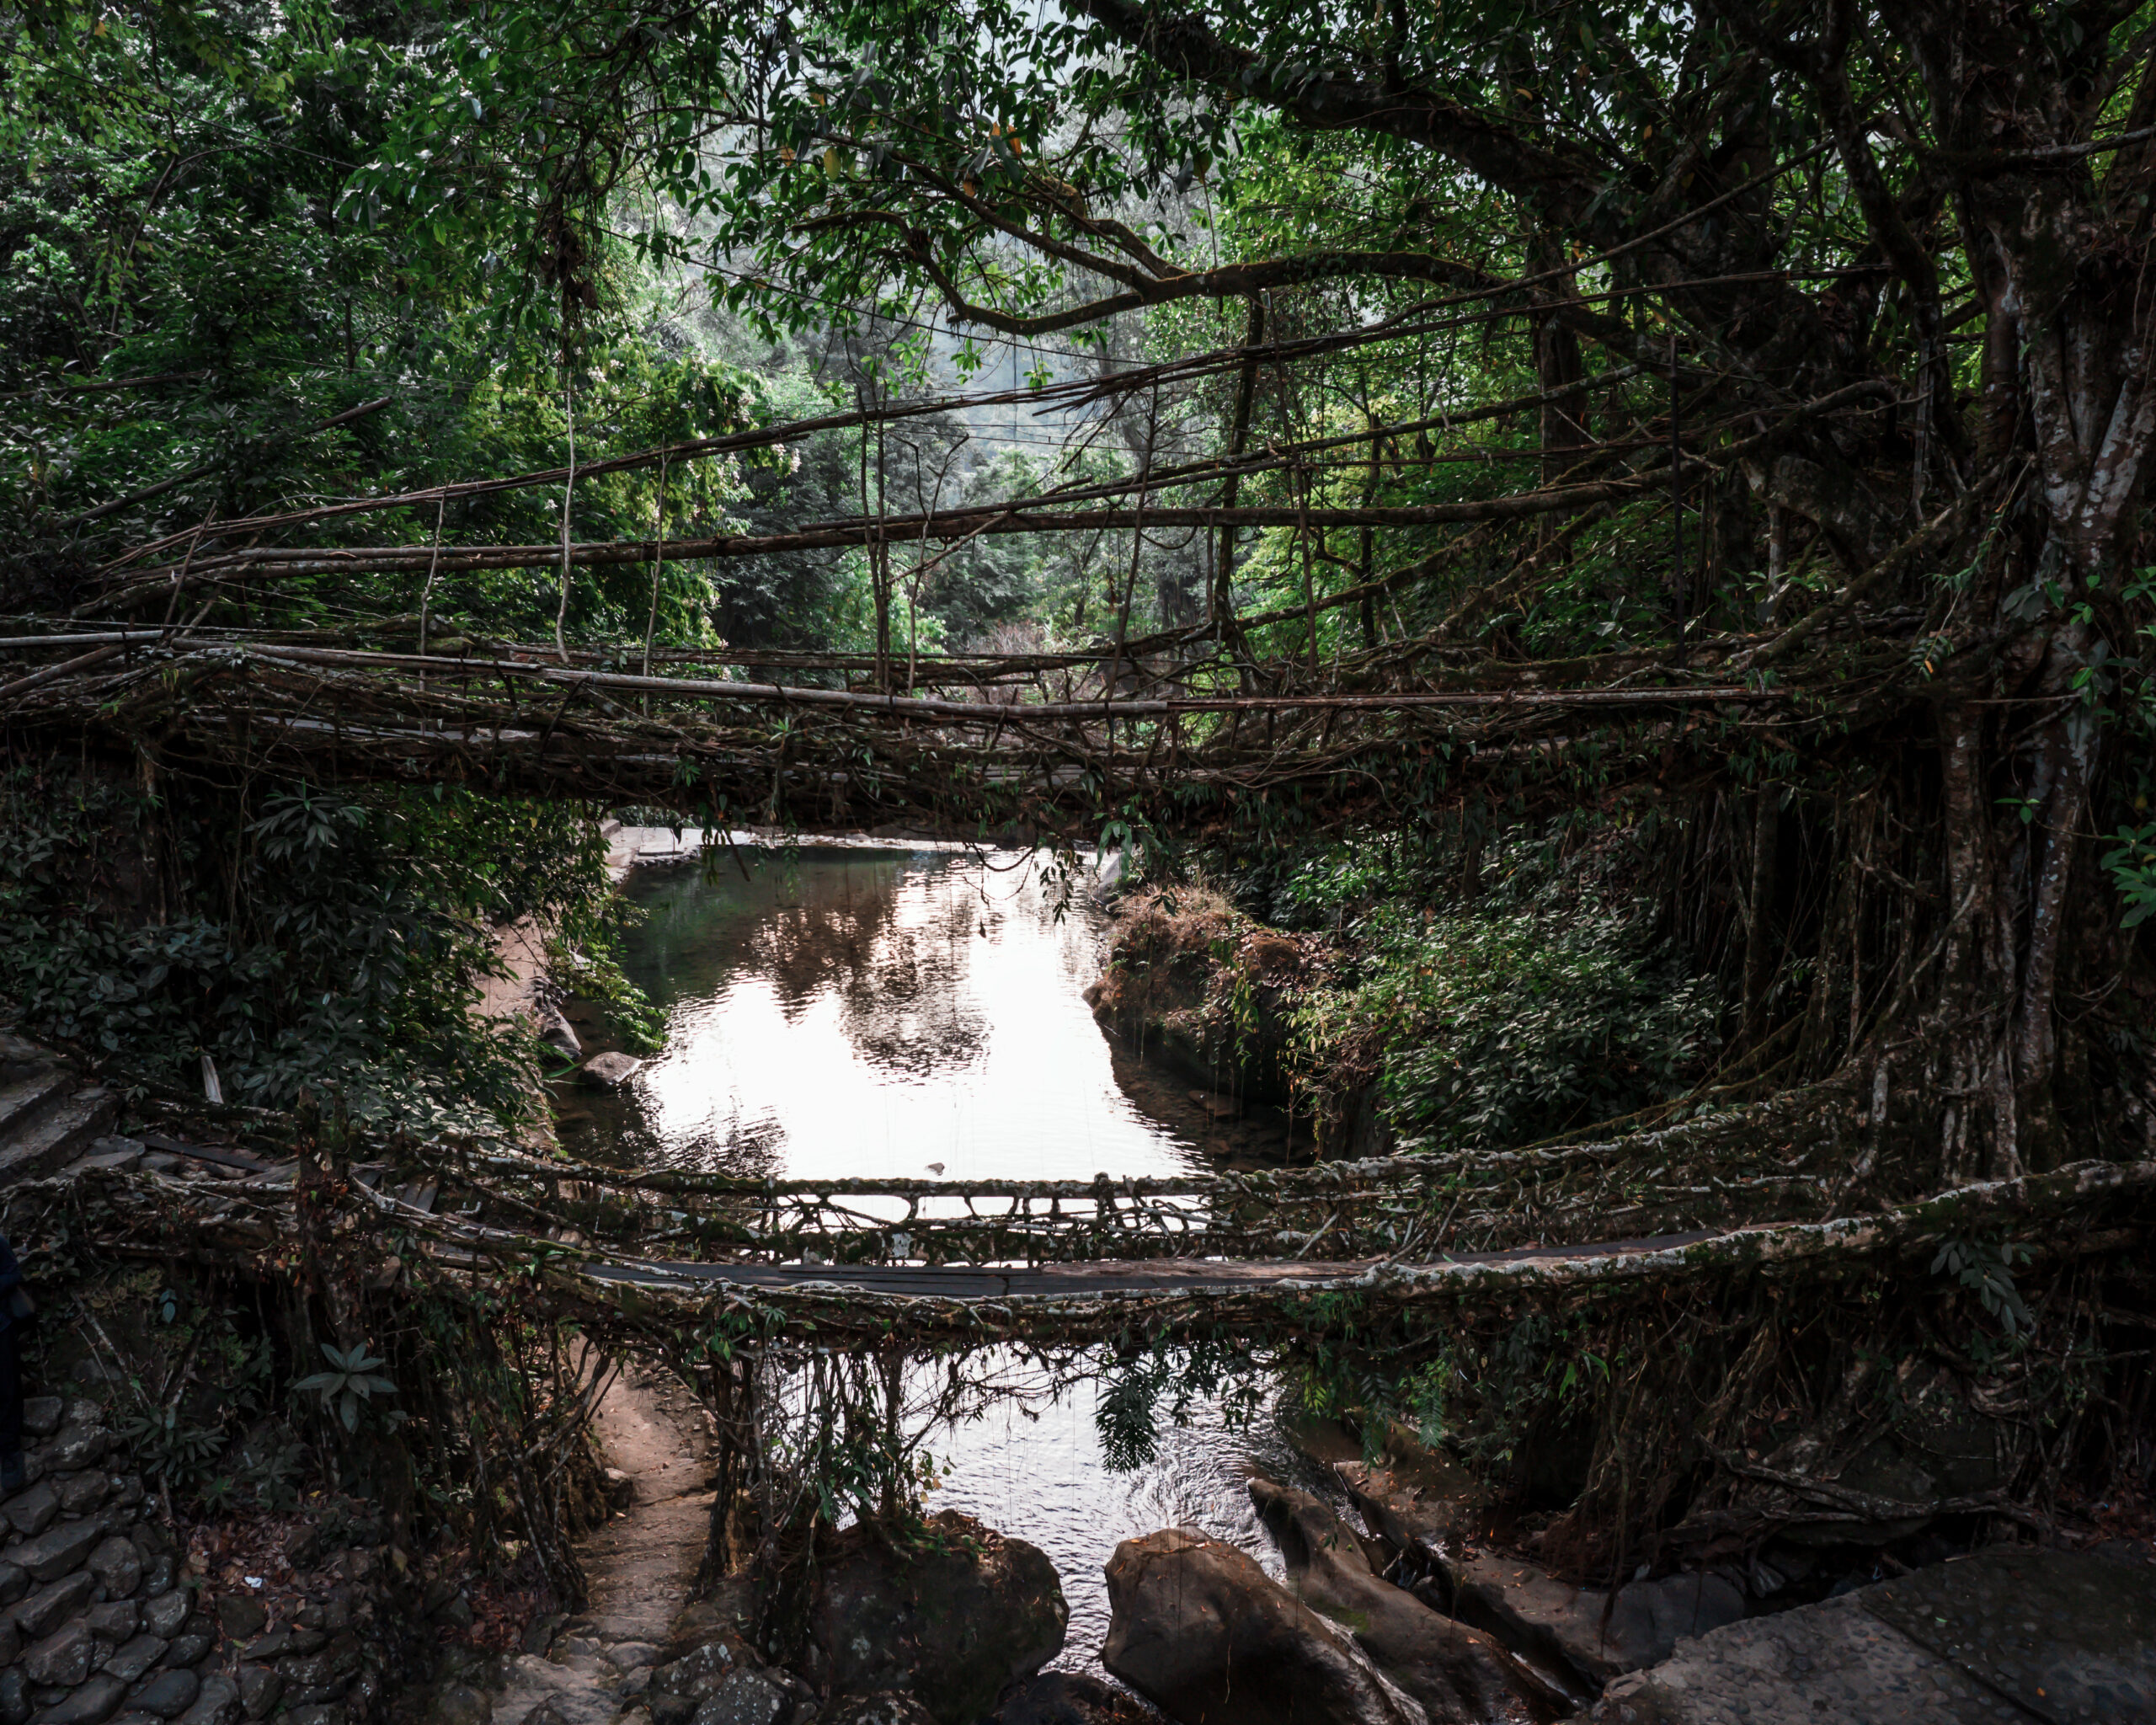 Double Decker Living root bridge in Nongriat Meghalaya